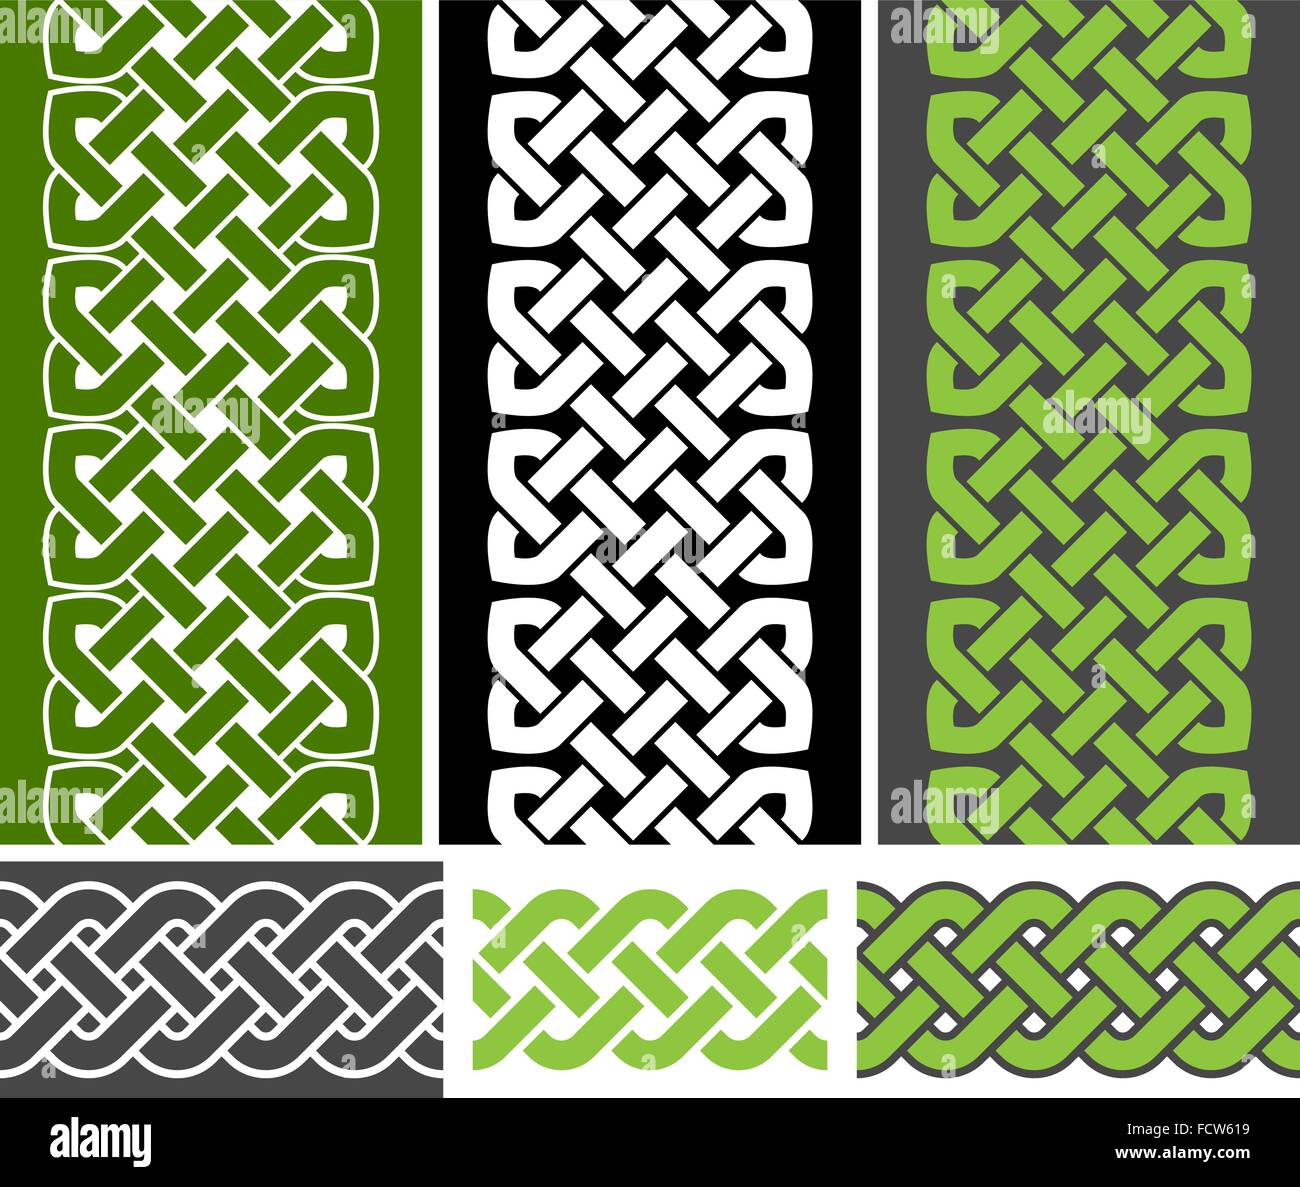 3 stile celtico annodato frontiere senza giunture e 3 treccia di frontiera senza giunture varianti, illustrazione vettoriale (verde, bianco, grigio a colori) Illustrazione Vettoriale